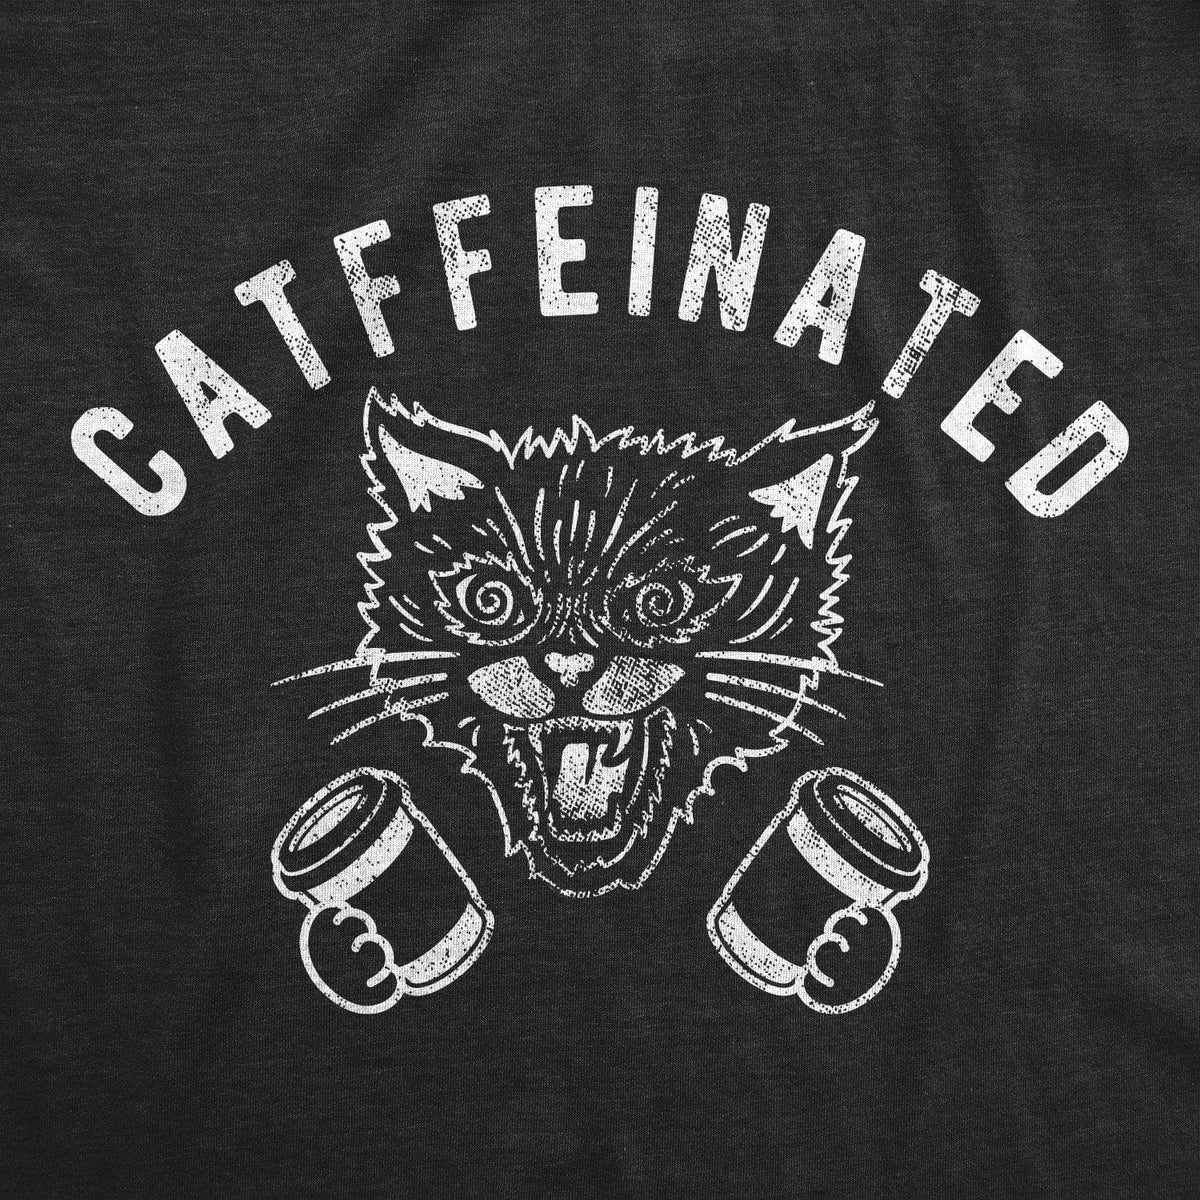 Catffeinated Women&#39;s Tshirt - Crazy Dog T-Shirts